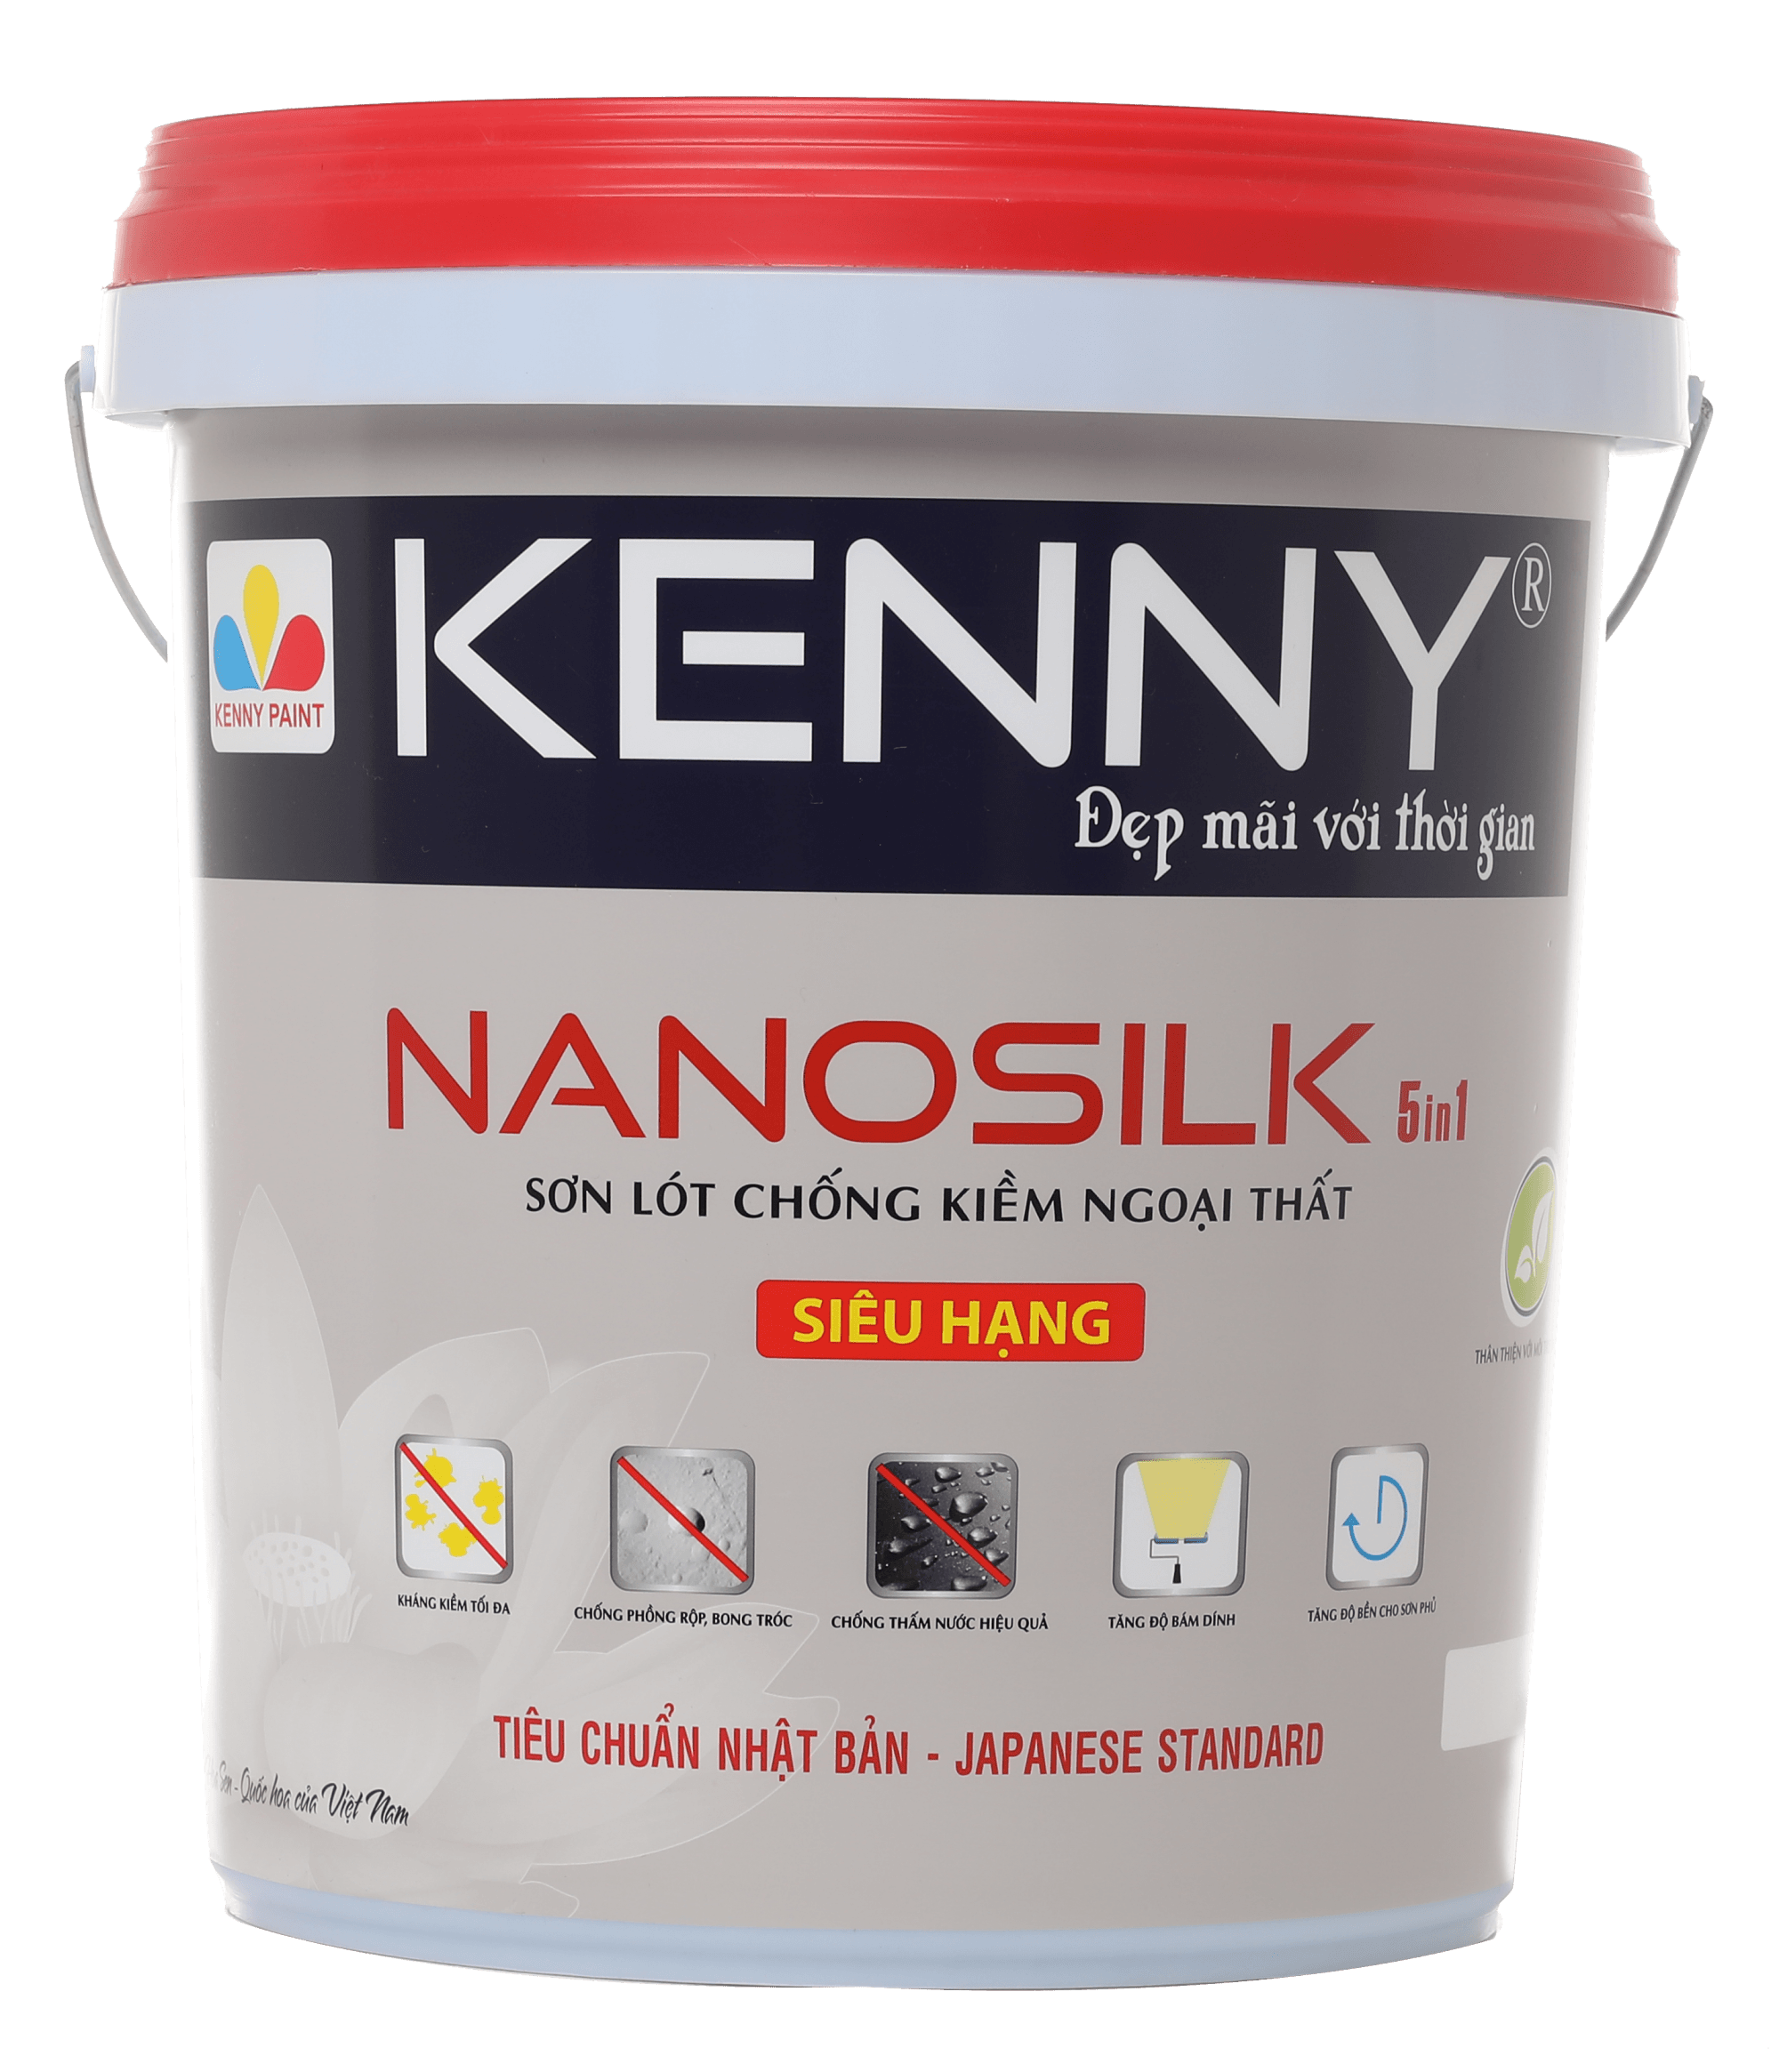 KENNY NANOSILK 5IN1: KENNY NANOSILK 5IN1 là giải pháp toàn diện cho bảo vệ và sửa chữa tường nhà. Sản phẩm này không chỉ chữa triệt để sự hư hỏng của tường, mà còn mang lại vẻ đẹp mới cho ngôi nhà của bạn.